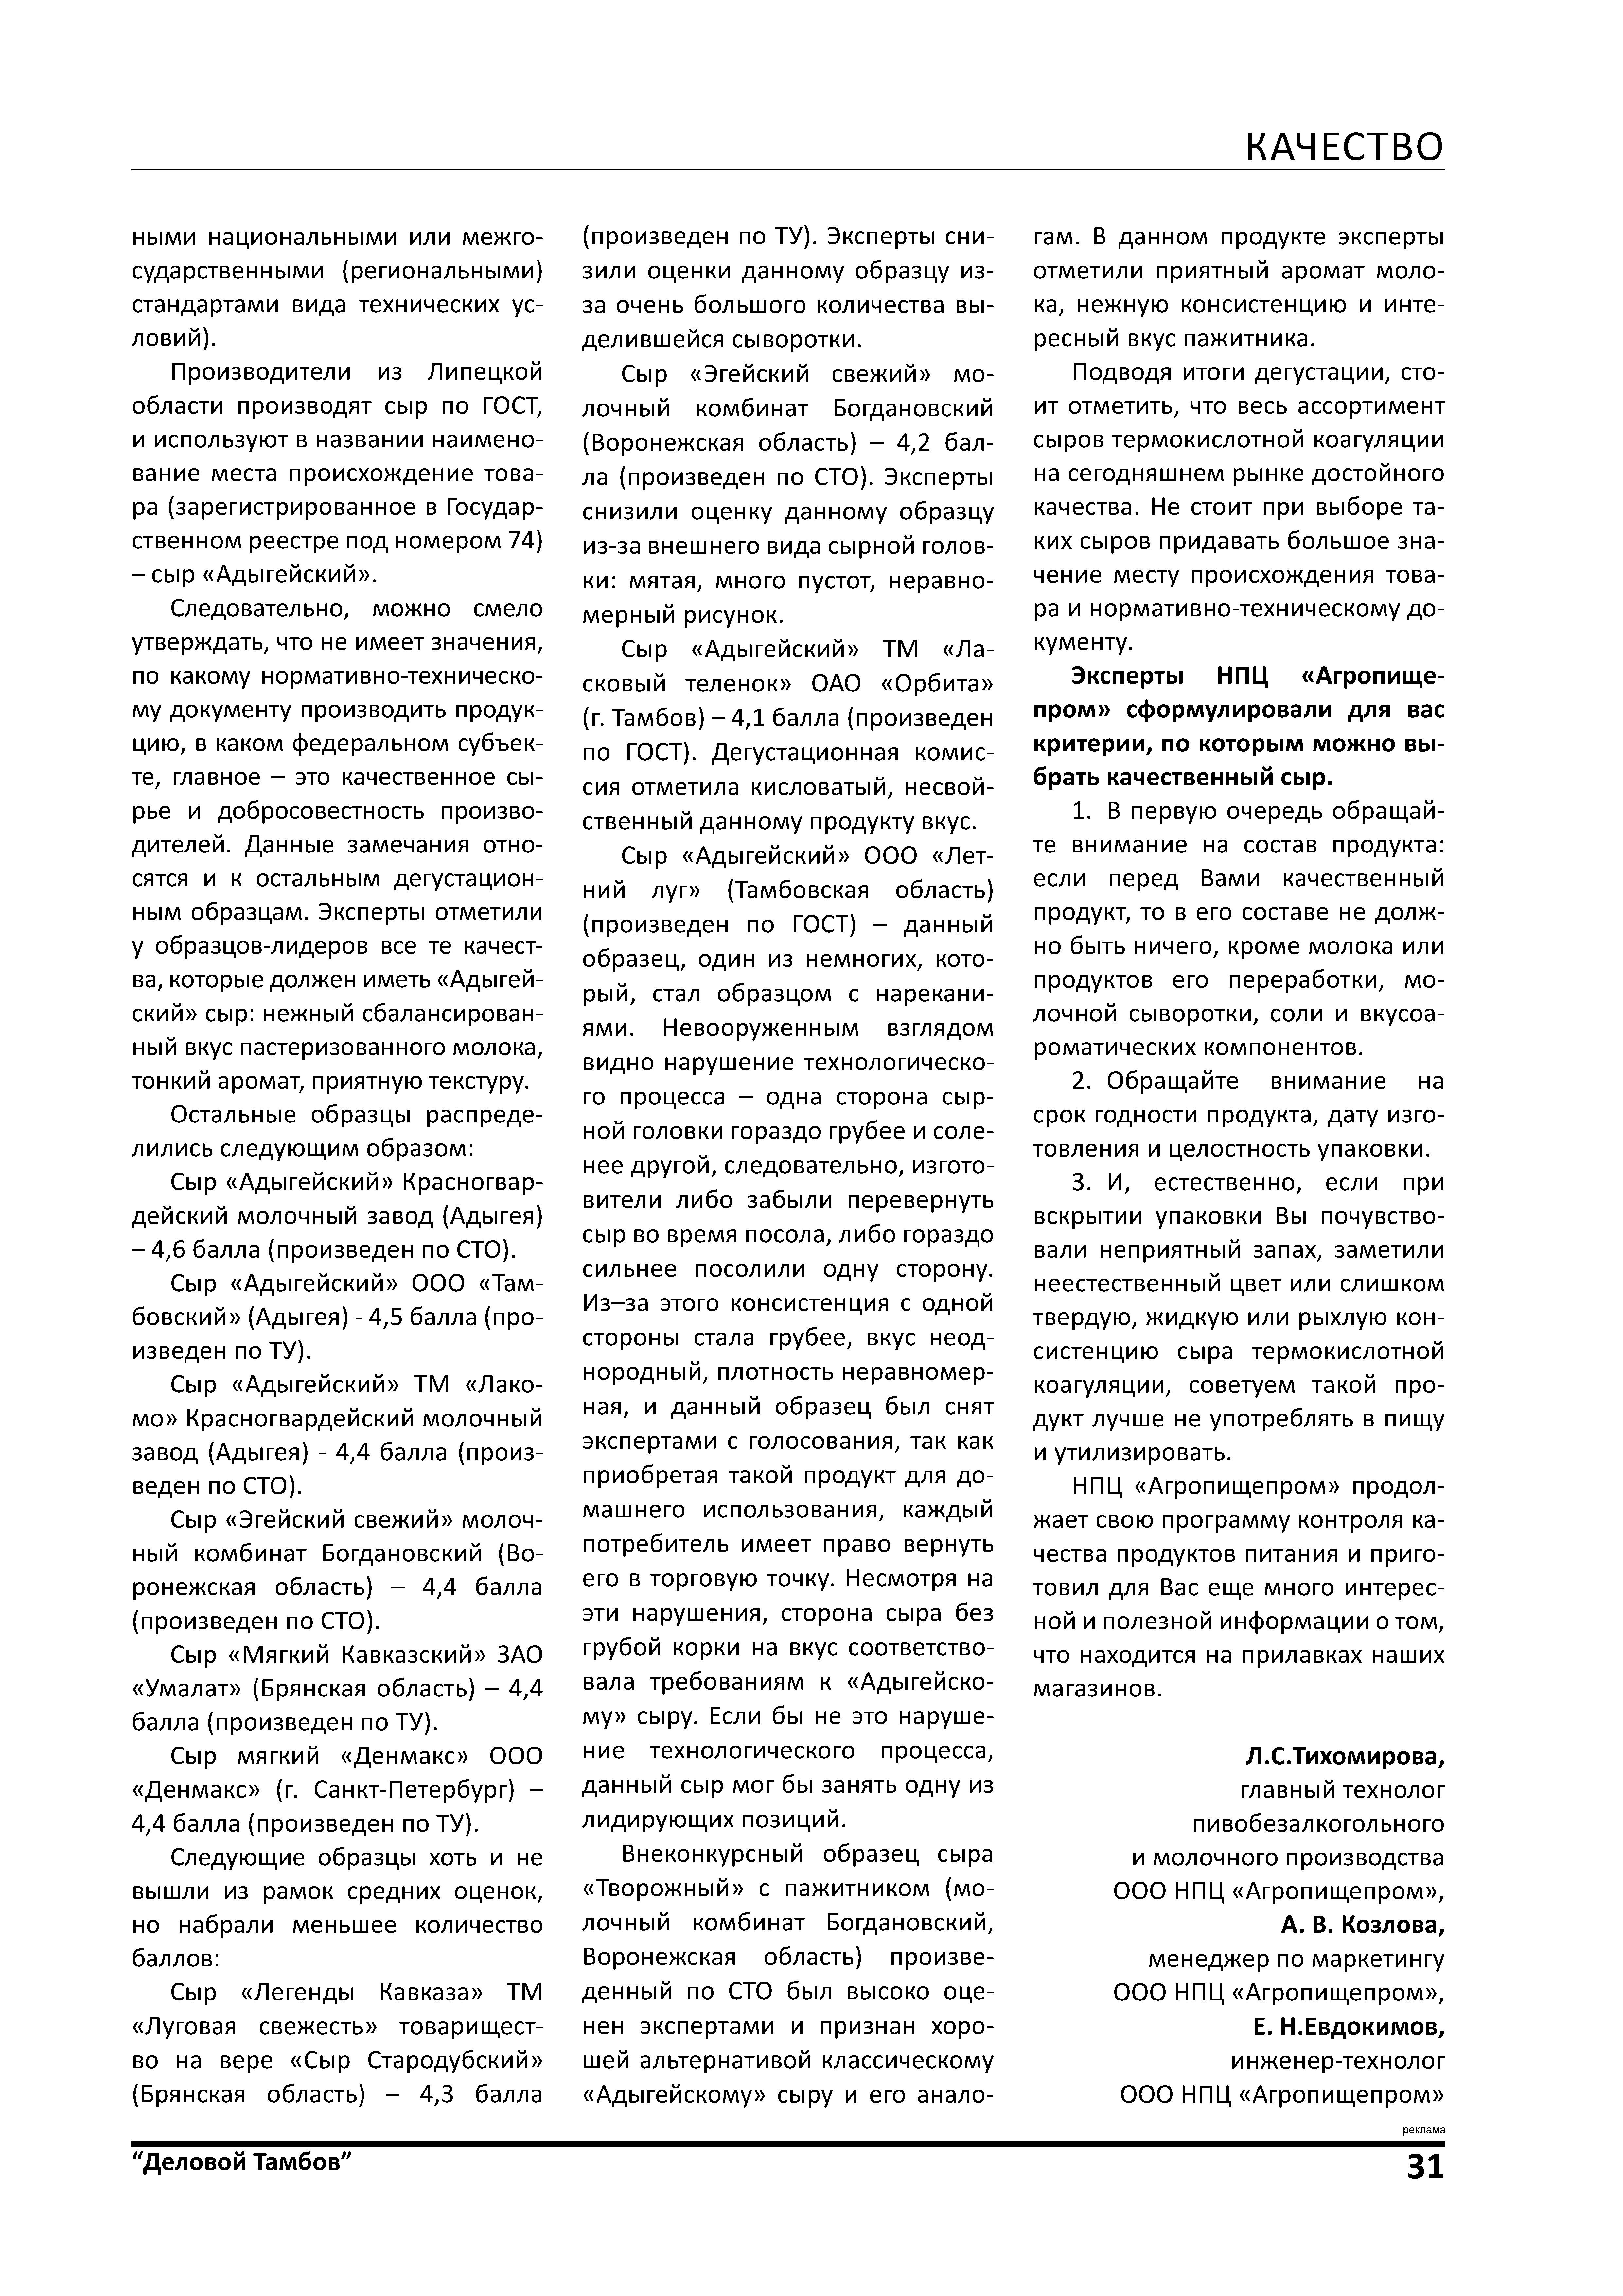 Статья "В НПЦ "Агропищепром" прошла дегустация сыров" журнал "Деловой Тамбов" №2, 2018